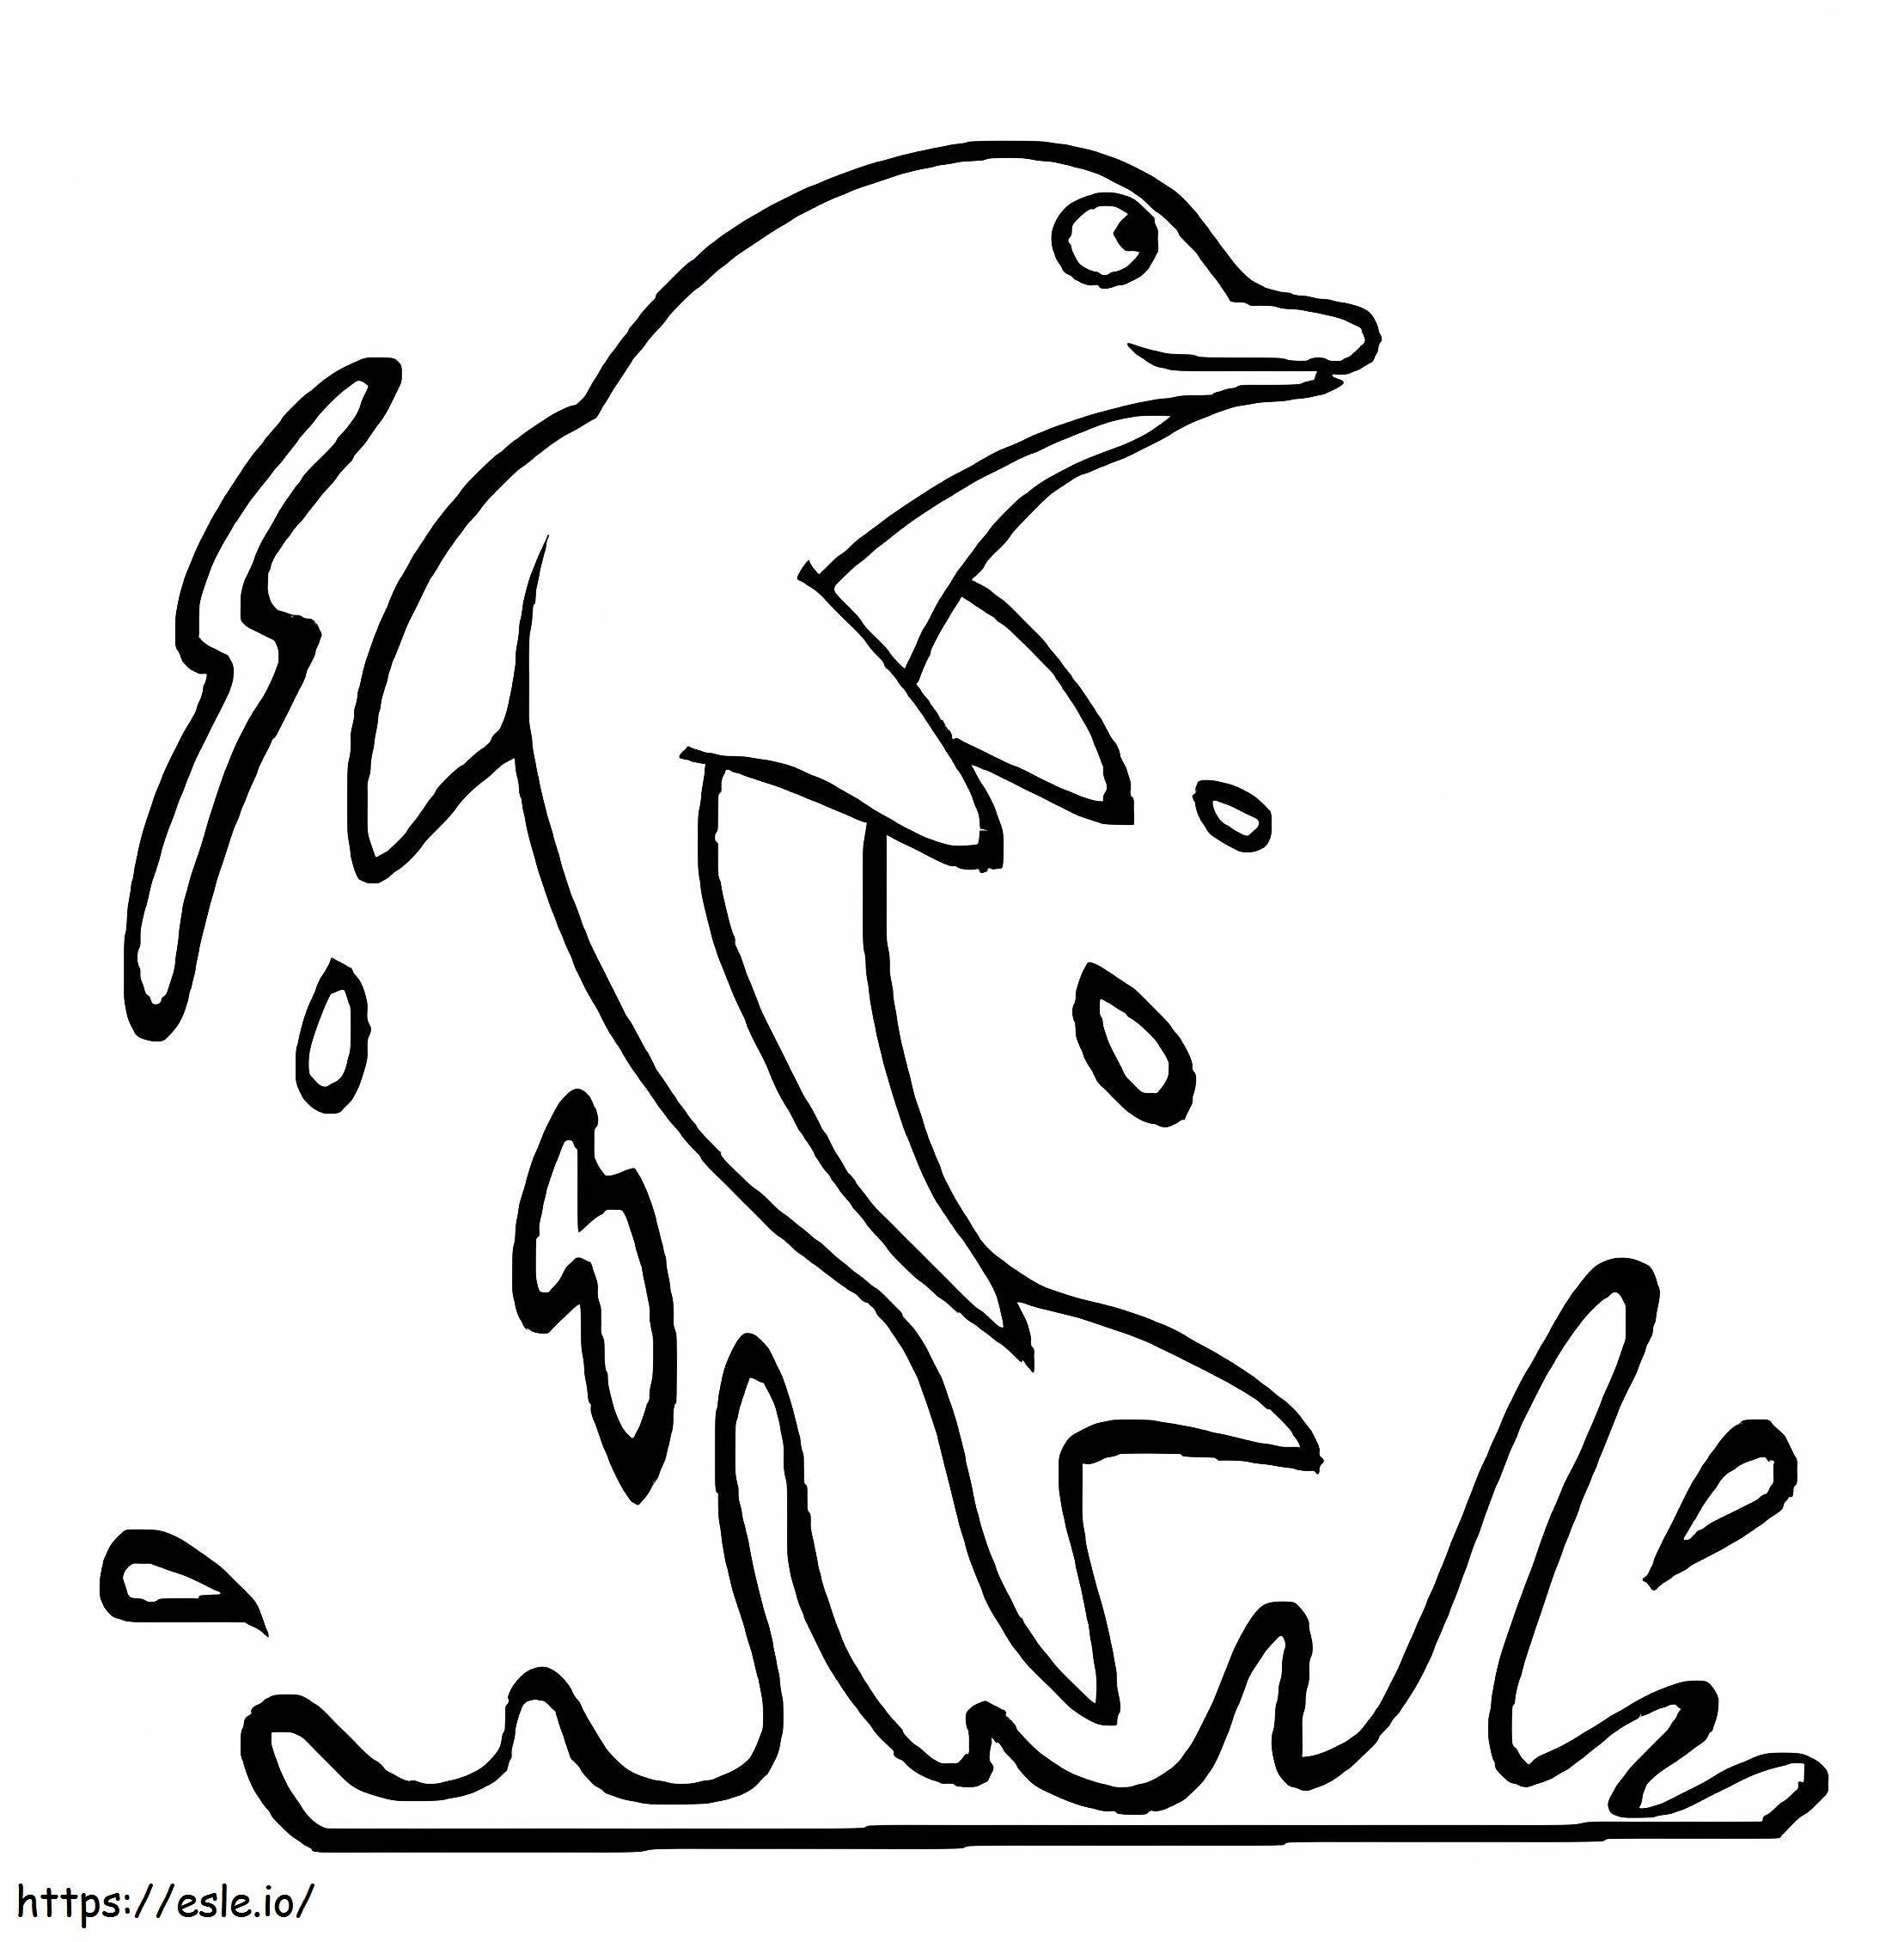 Disegno di base del salto del delfino da colorare